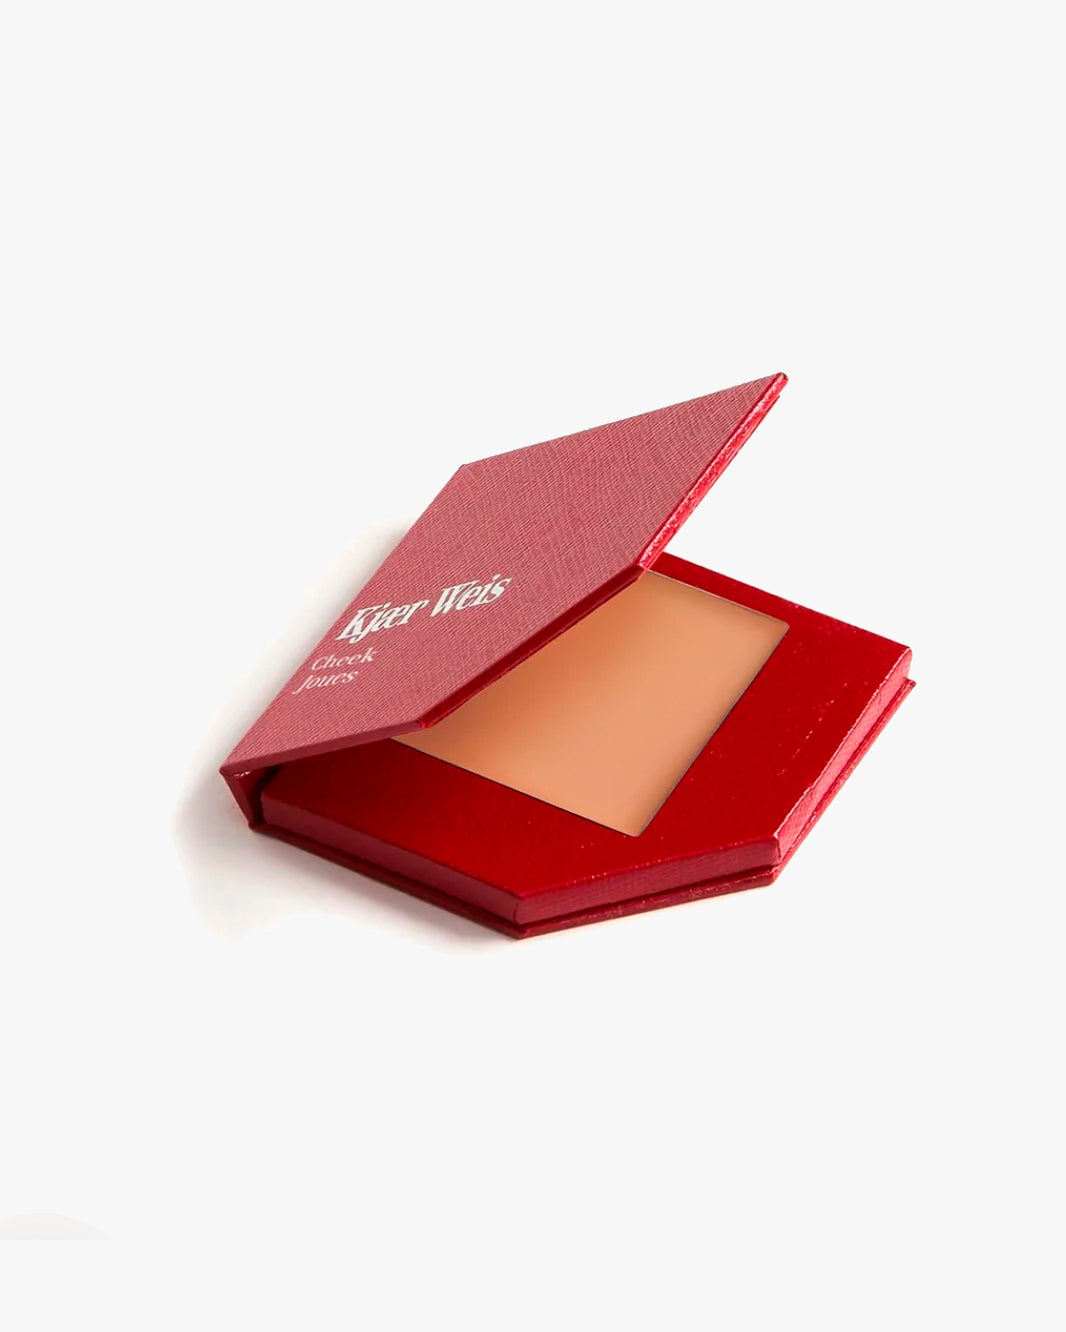 Cream Bronzer - Red Edition